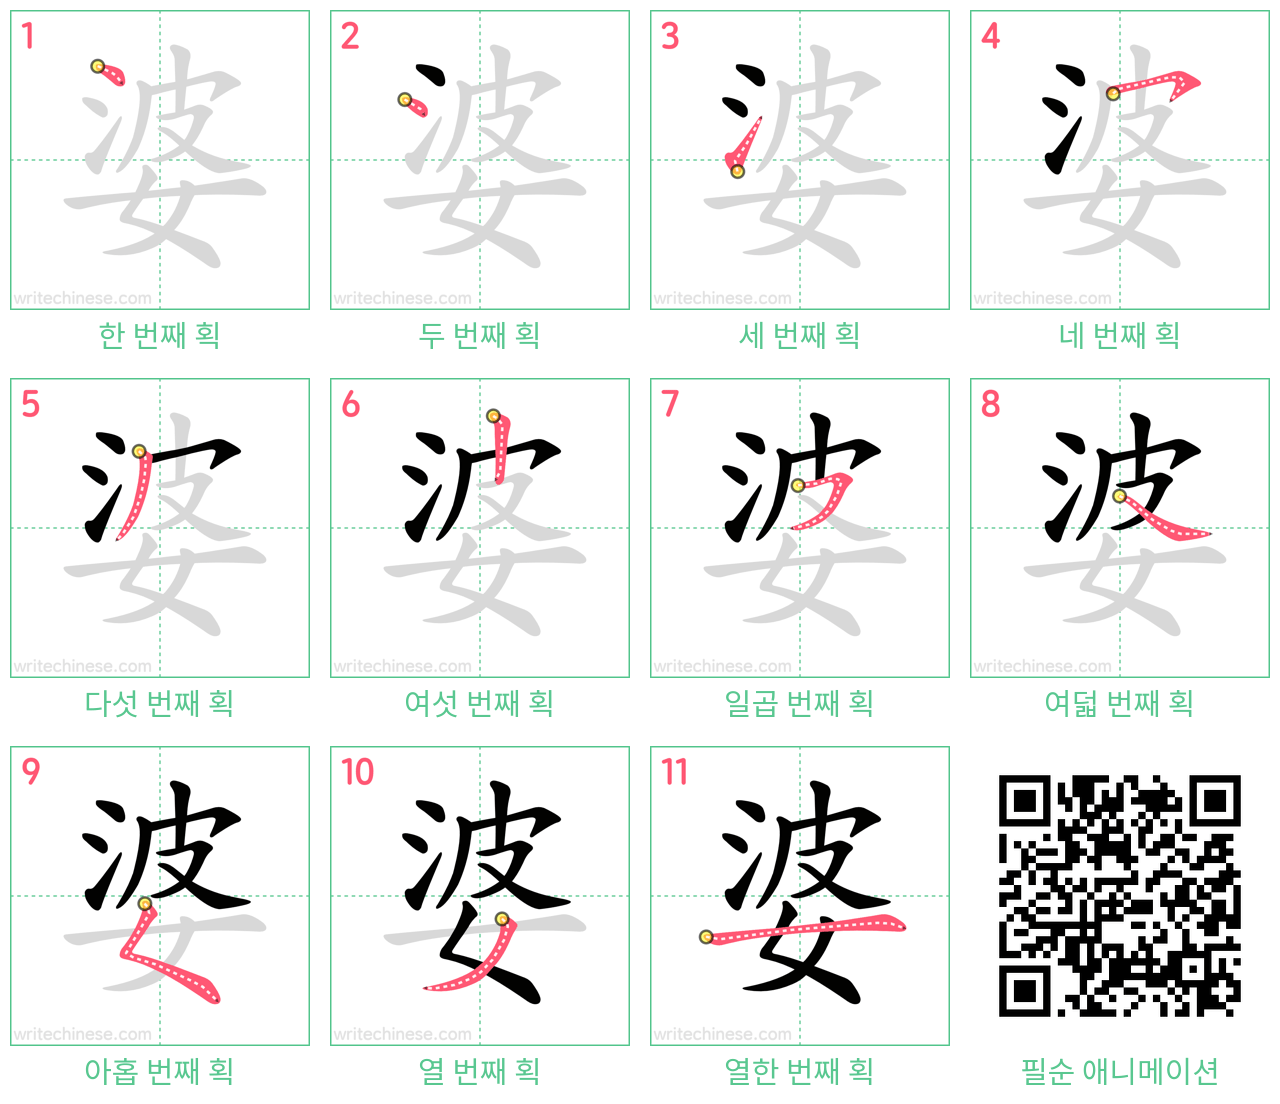 婆 step-by-step stroke order diagrams